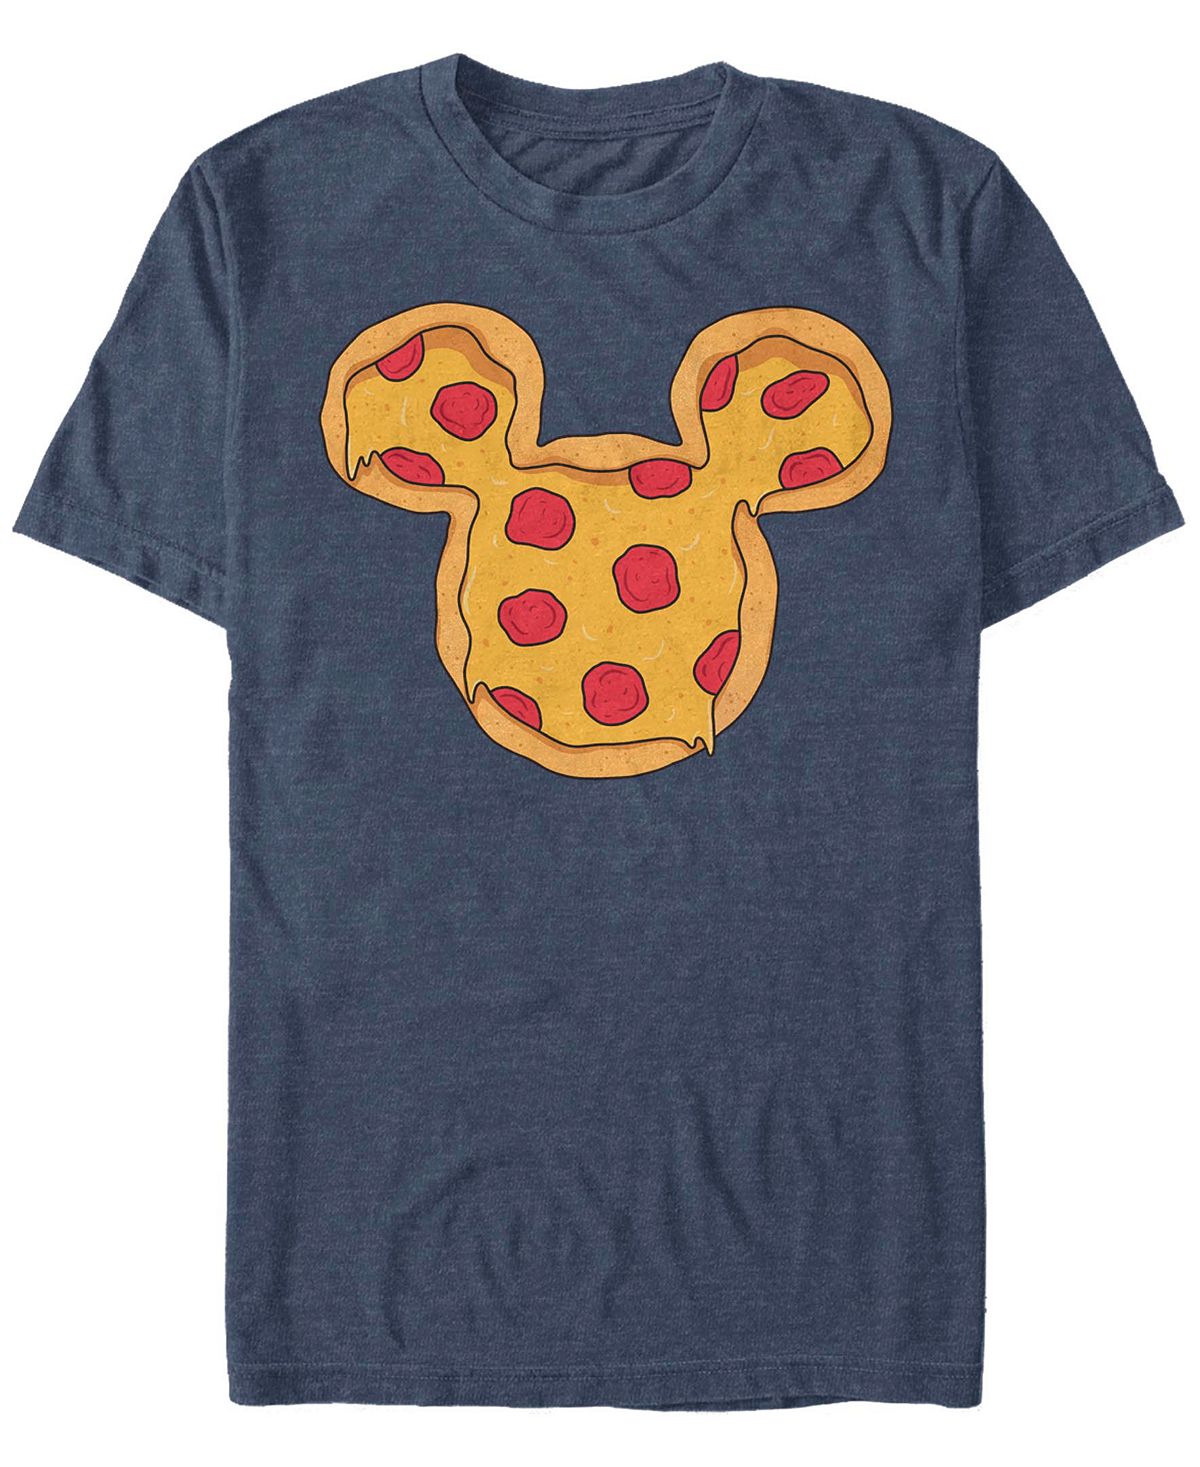 Мужская футболка с короткими рукавами mickey pizza ears Fifth Sun, синий мужская футболка mickey classic pluto holiday colors с короткими рукавами fifth sun черный